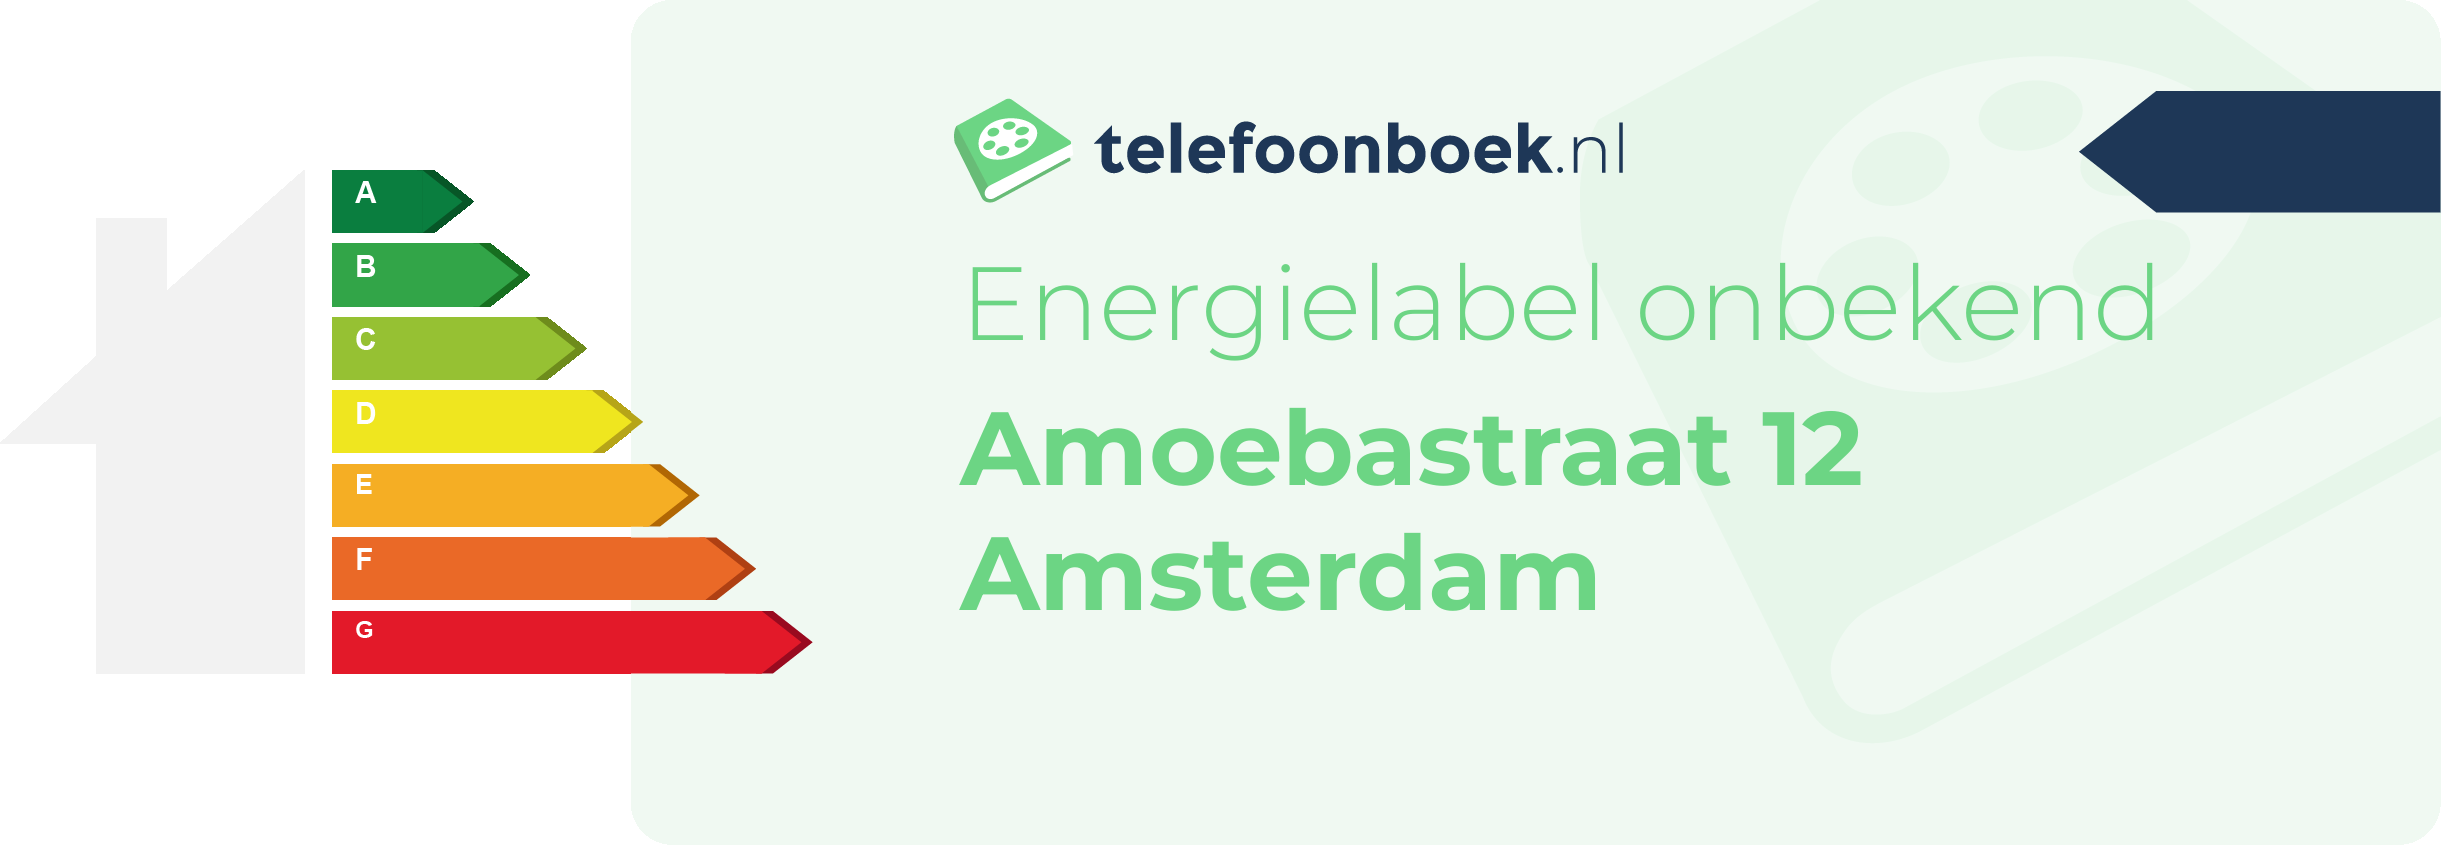 Energielabel Amoebastraat 12 Amsterdam